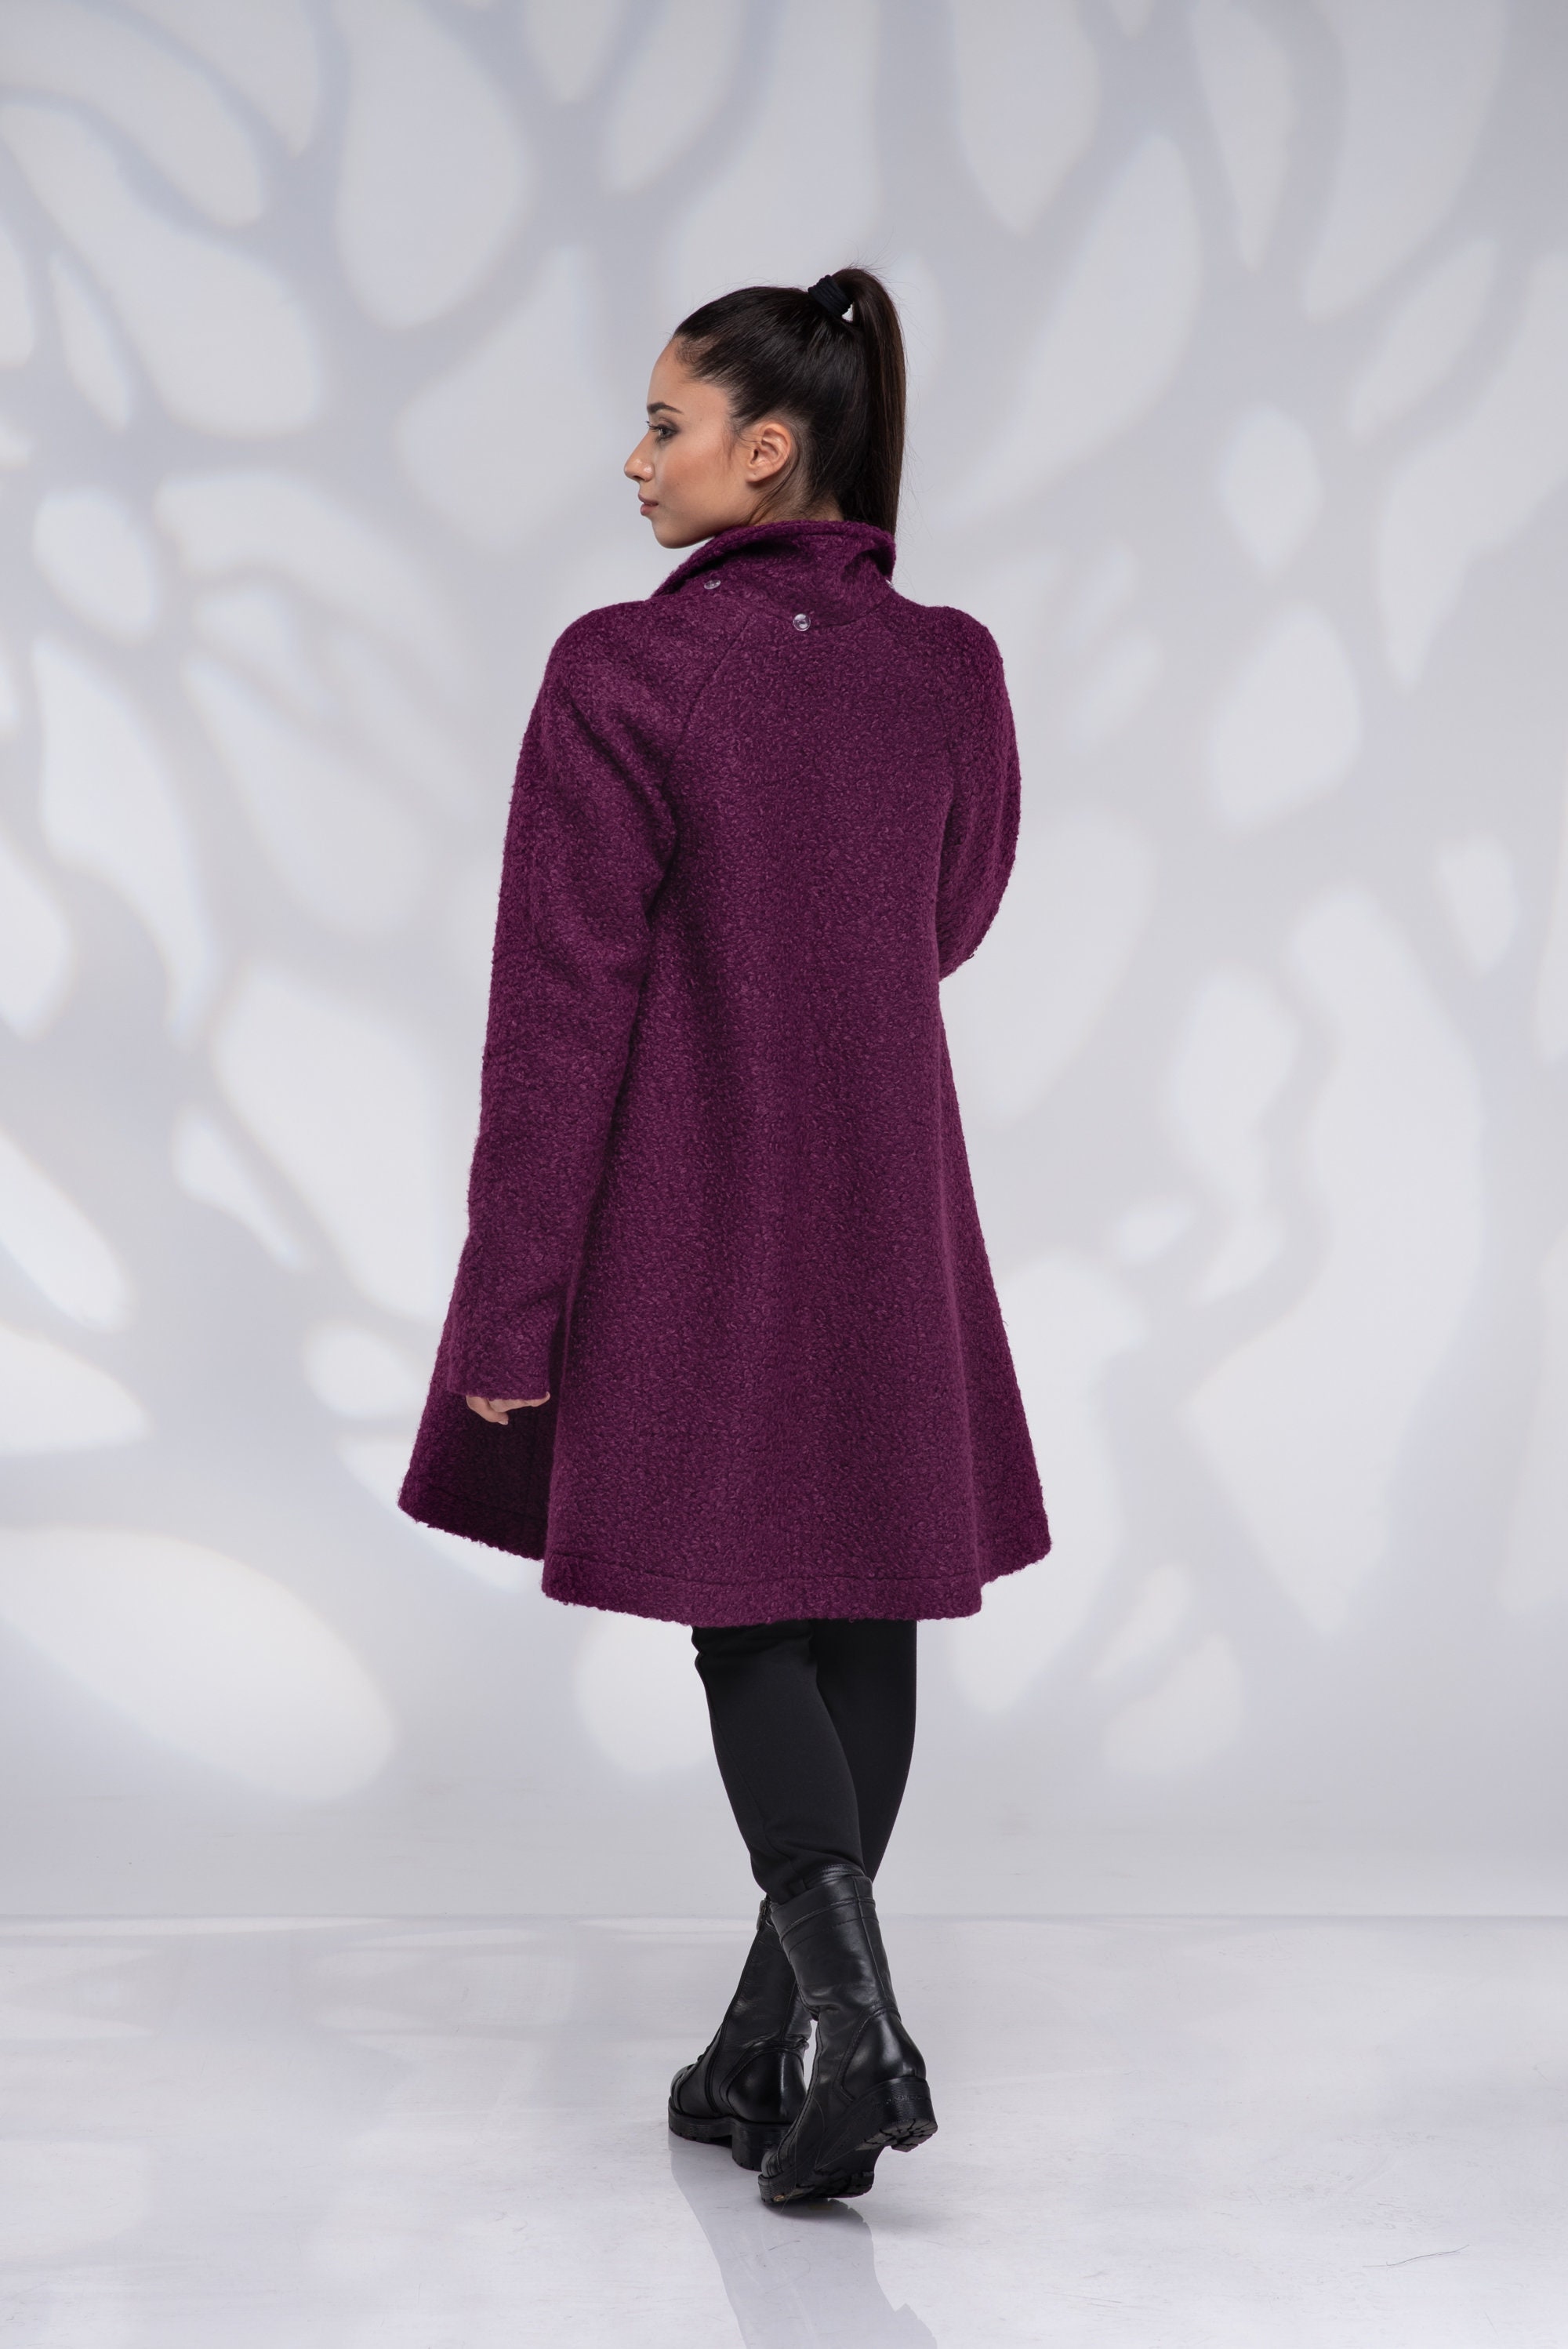 Wool Swing Coat Women, Plus Size Coat, Winter Short Coat, A Line